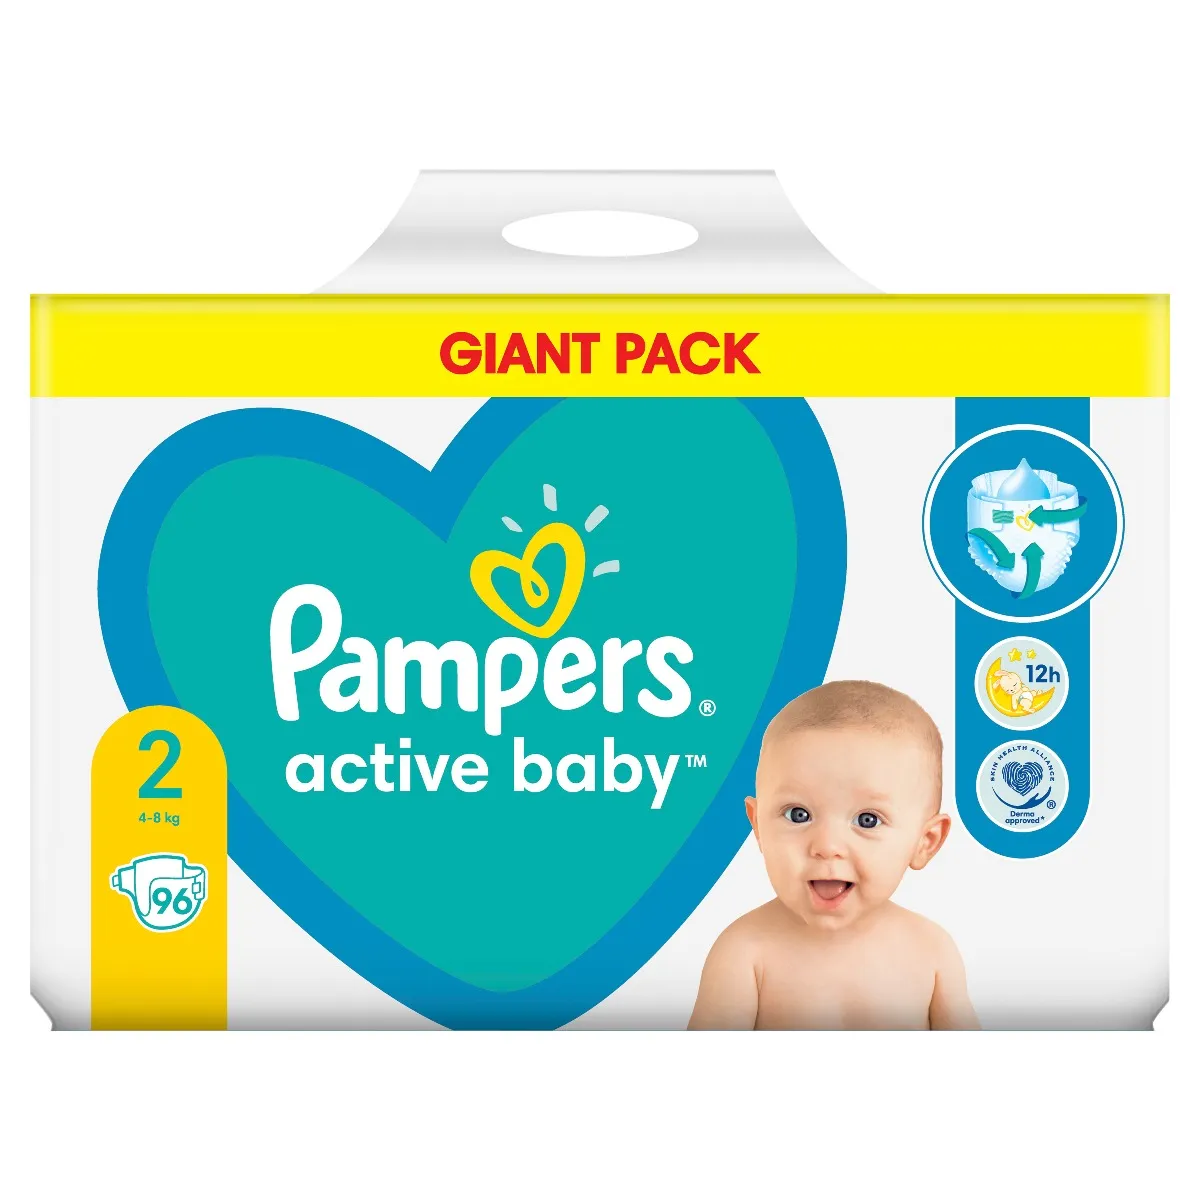 Pampers Active Baby vel. 2 Giant Pack 4-8 kg dětské pleny 96 ks